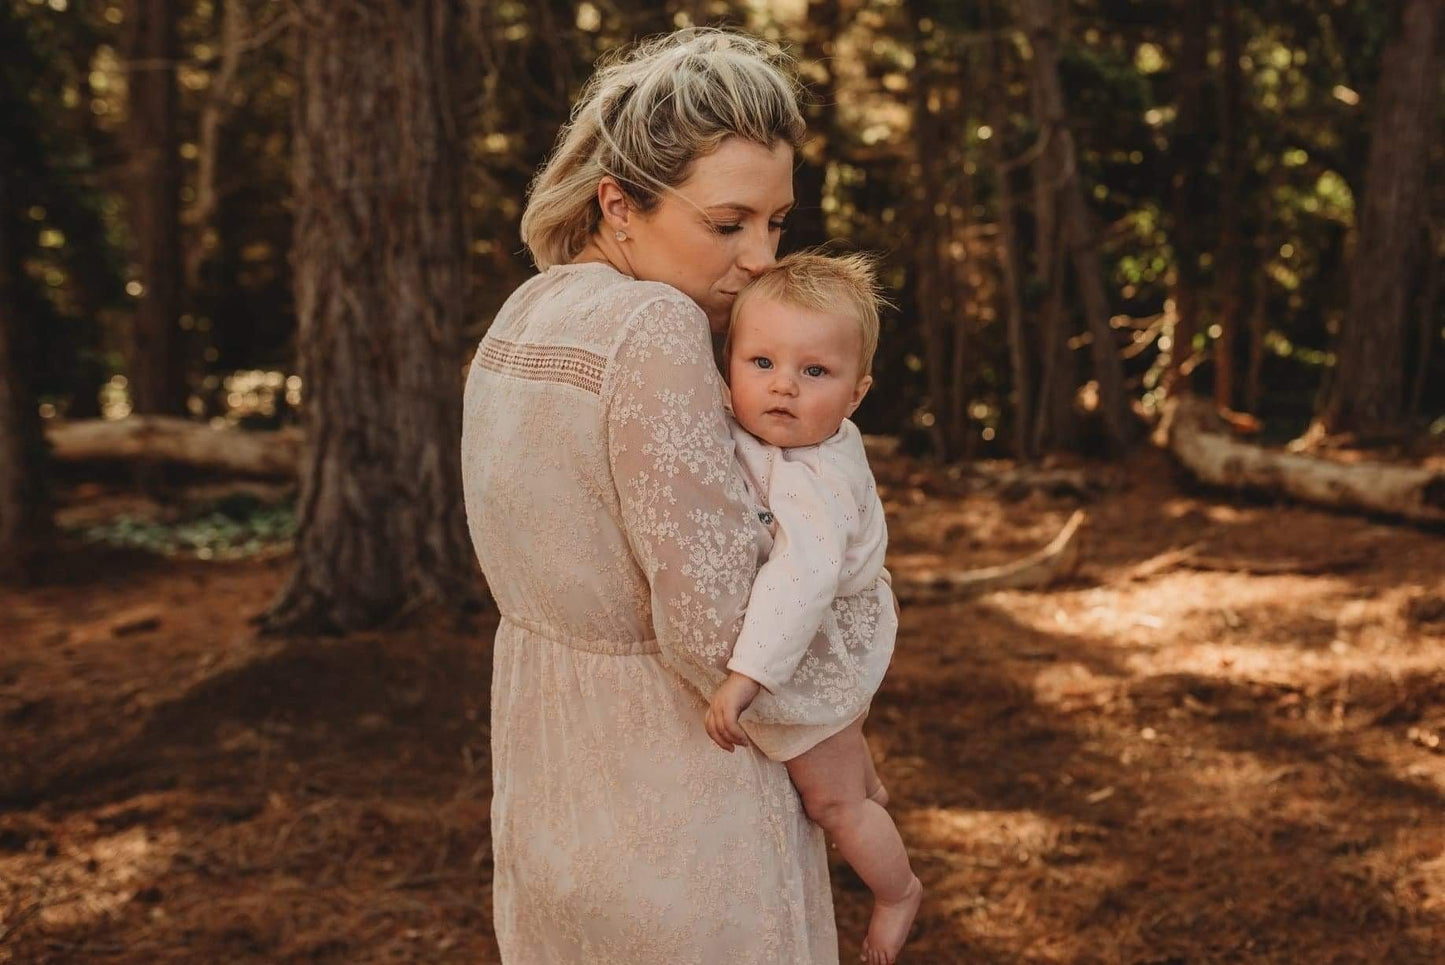 Mumma holding baby during family photoshoot wearing blush lace dress